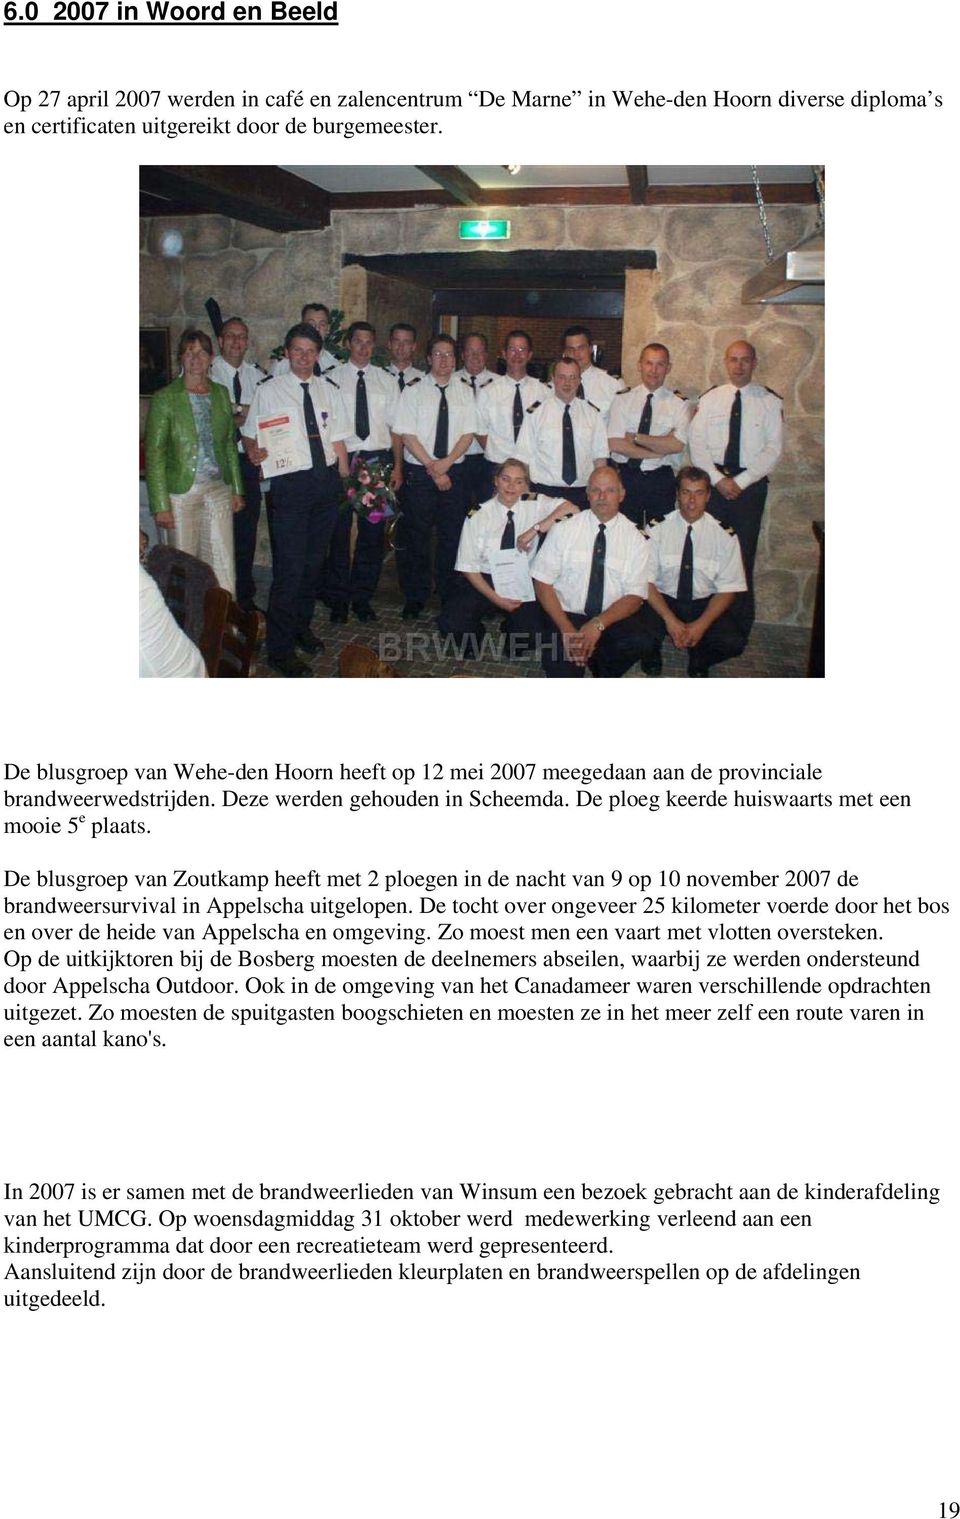 De blusgroep van Zoutkamp heeft met 2 ploegen in de nacht van 9 op 10 november 2007 de brandweersurvival in Appelscha uitgelopen.